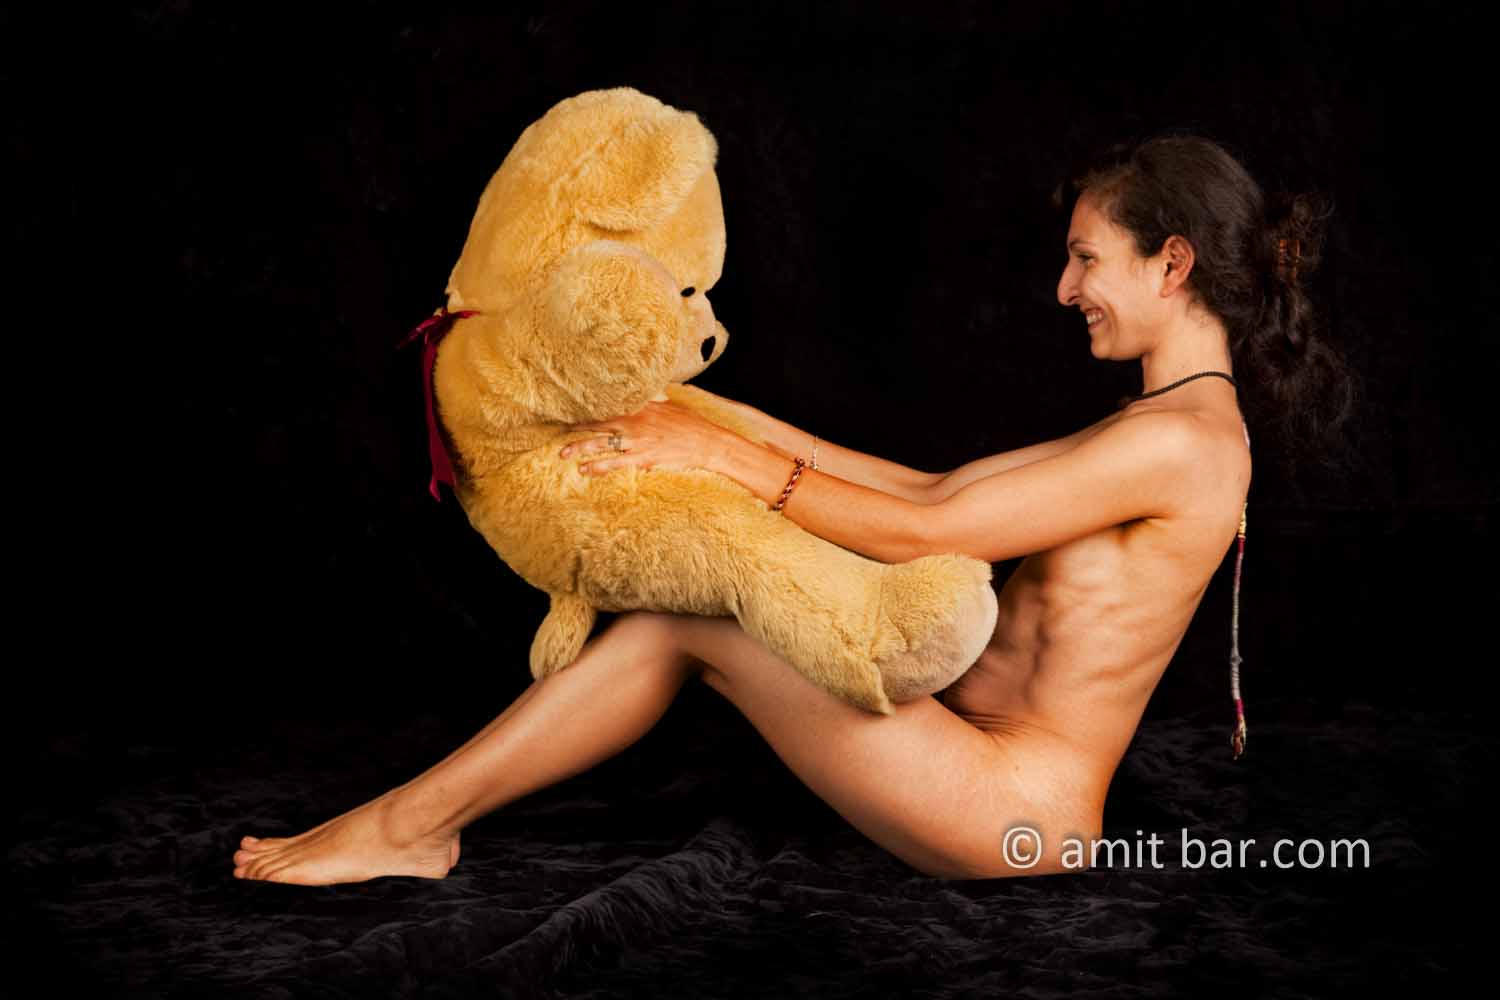 Teddy bear I: Teddy bear with nude model